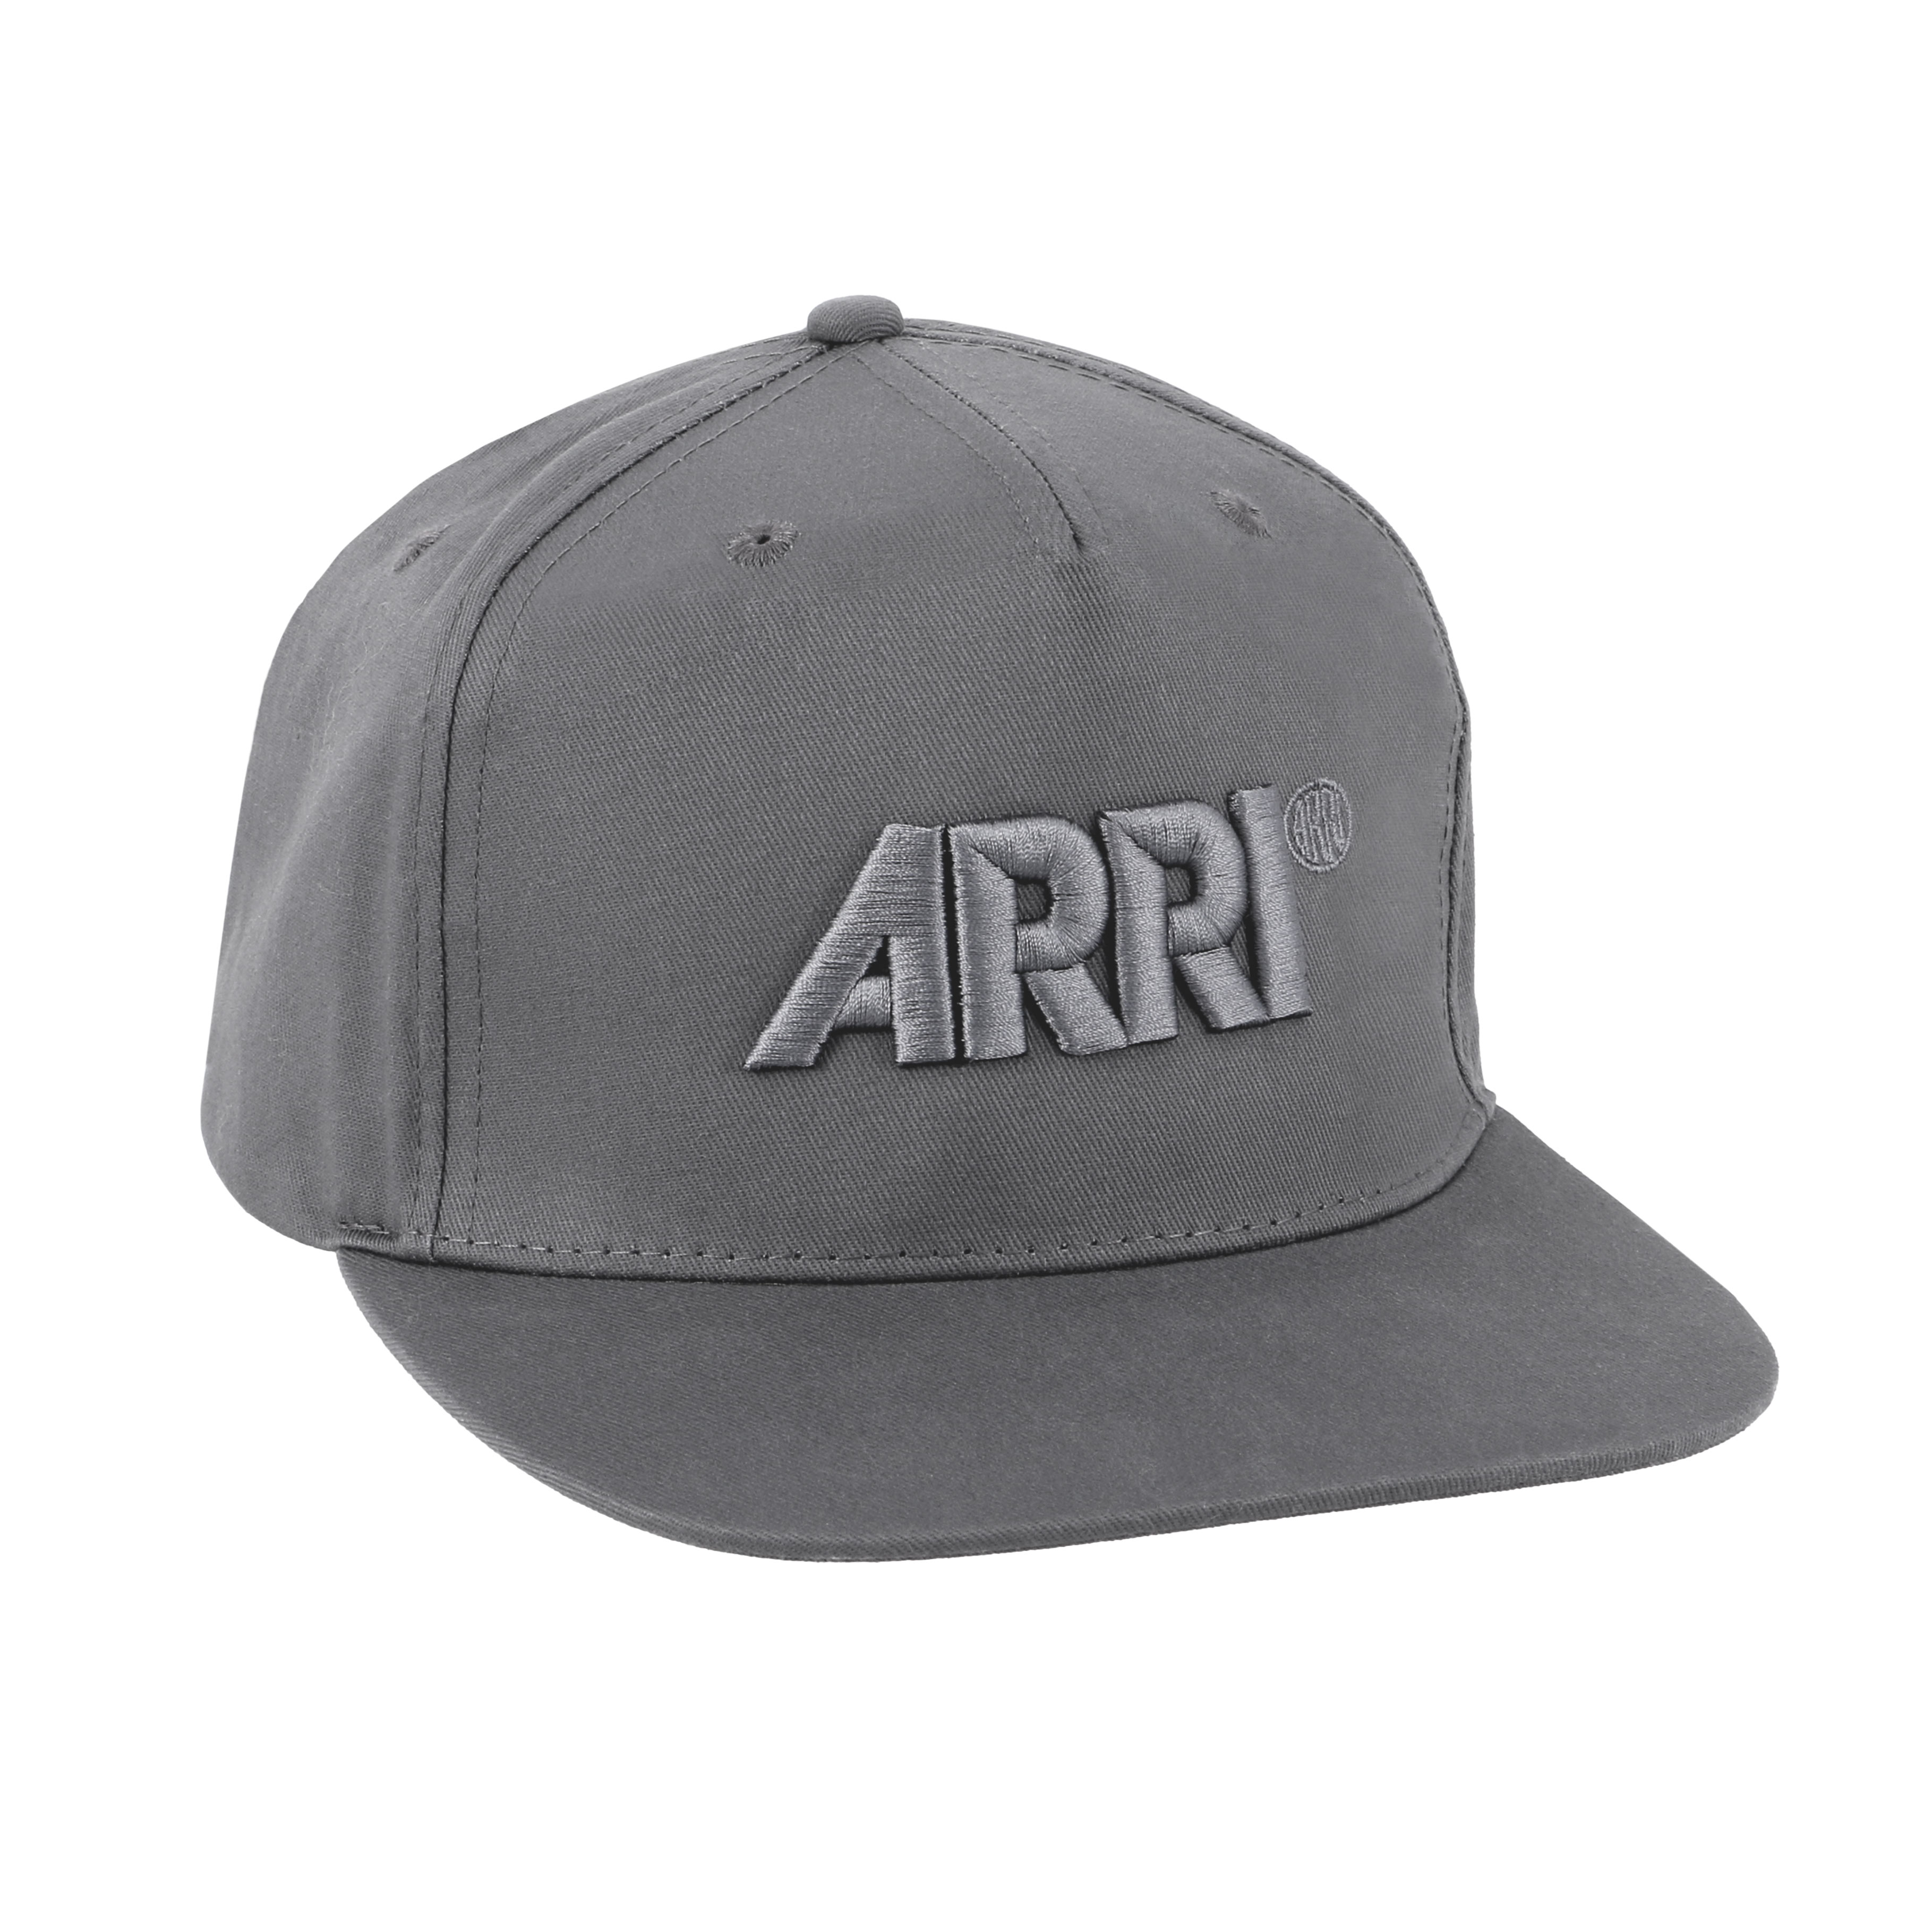 ARRI Unisex Snapback Cap in graphite grey 